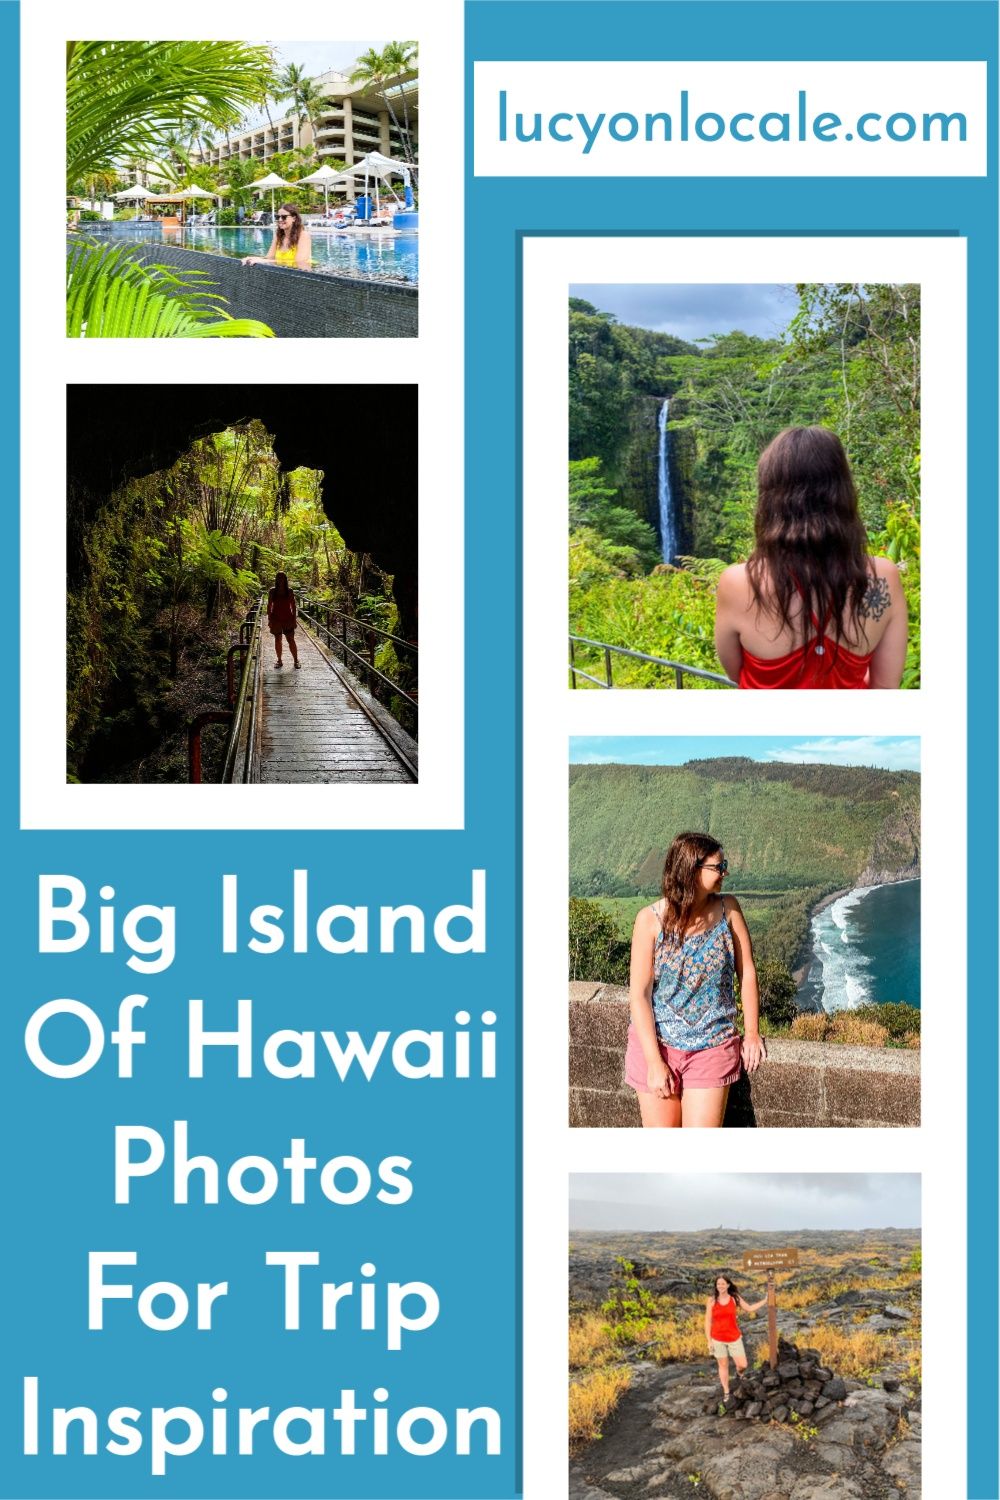 Big Island of Hawaii photos